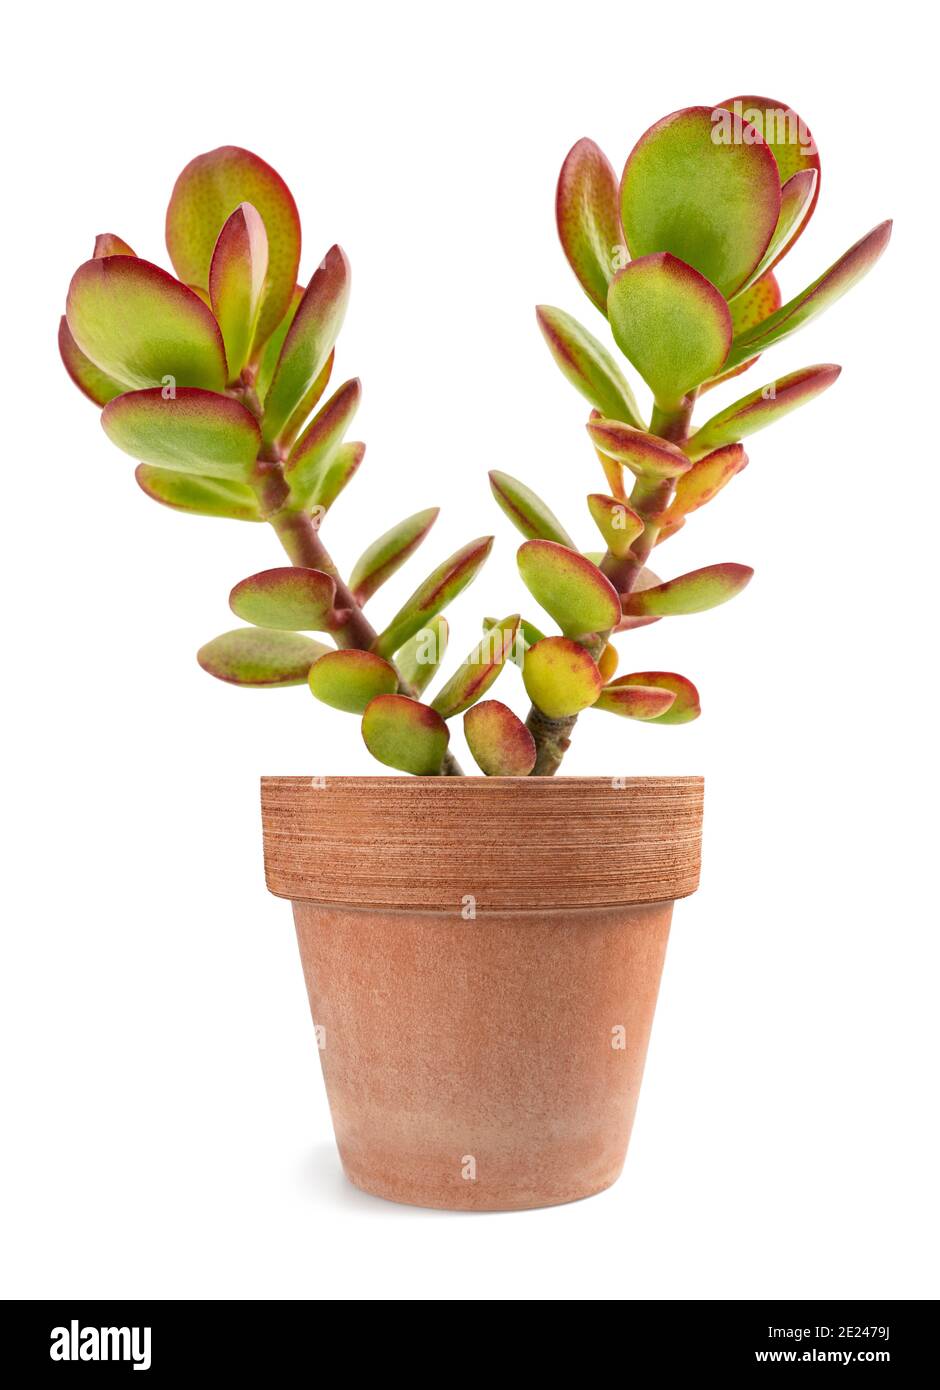 Crassula portulacea plant in vase isolated on white background Stock Photo